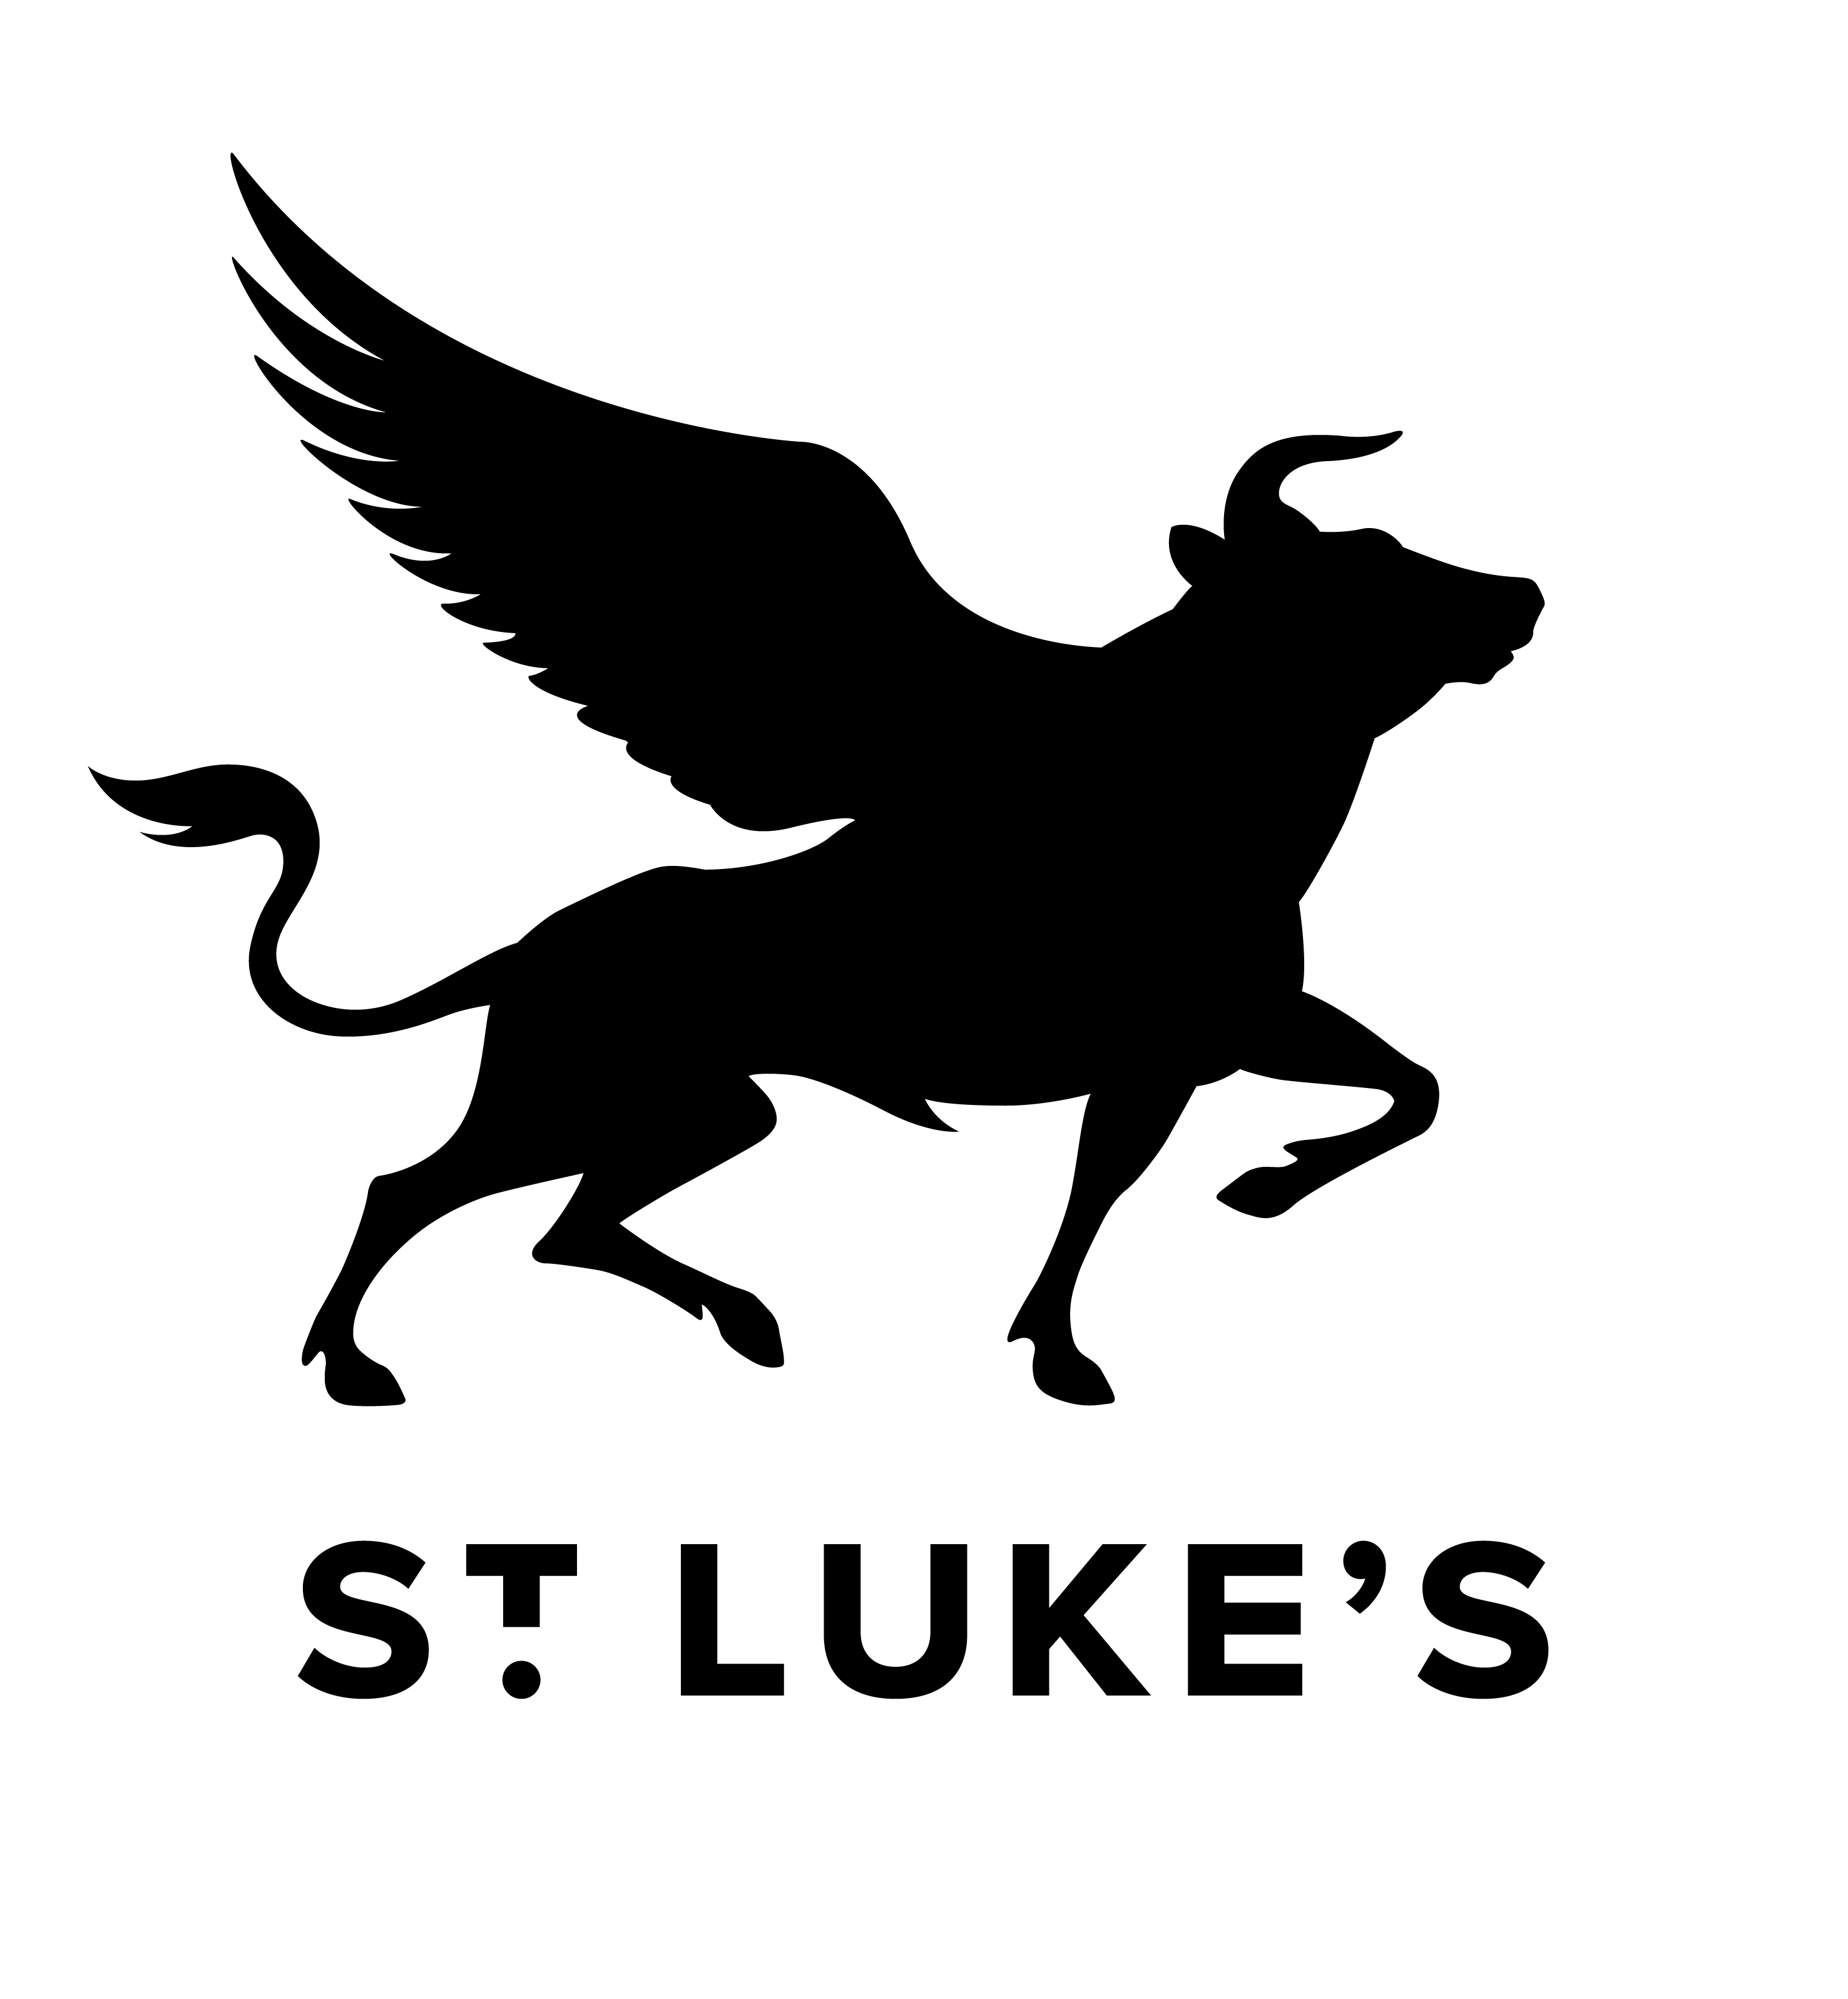 ST.LUKES